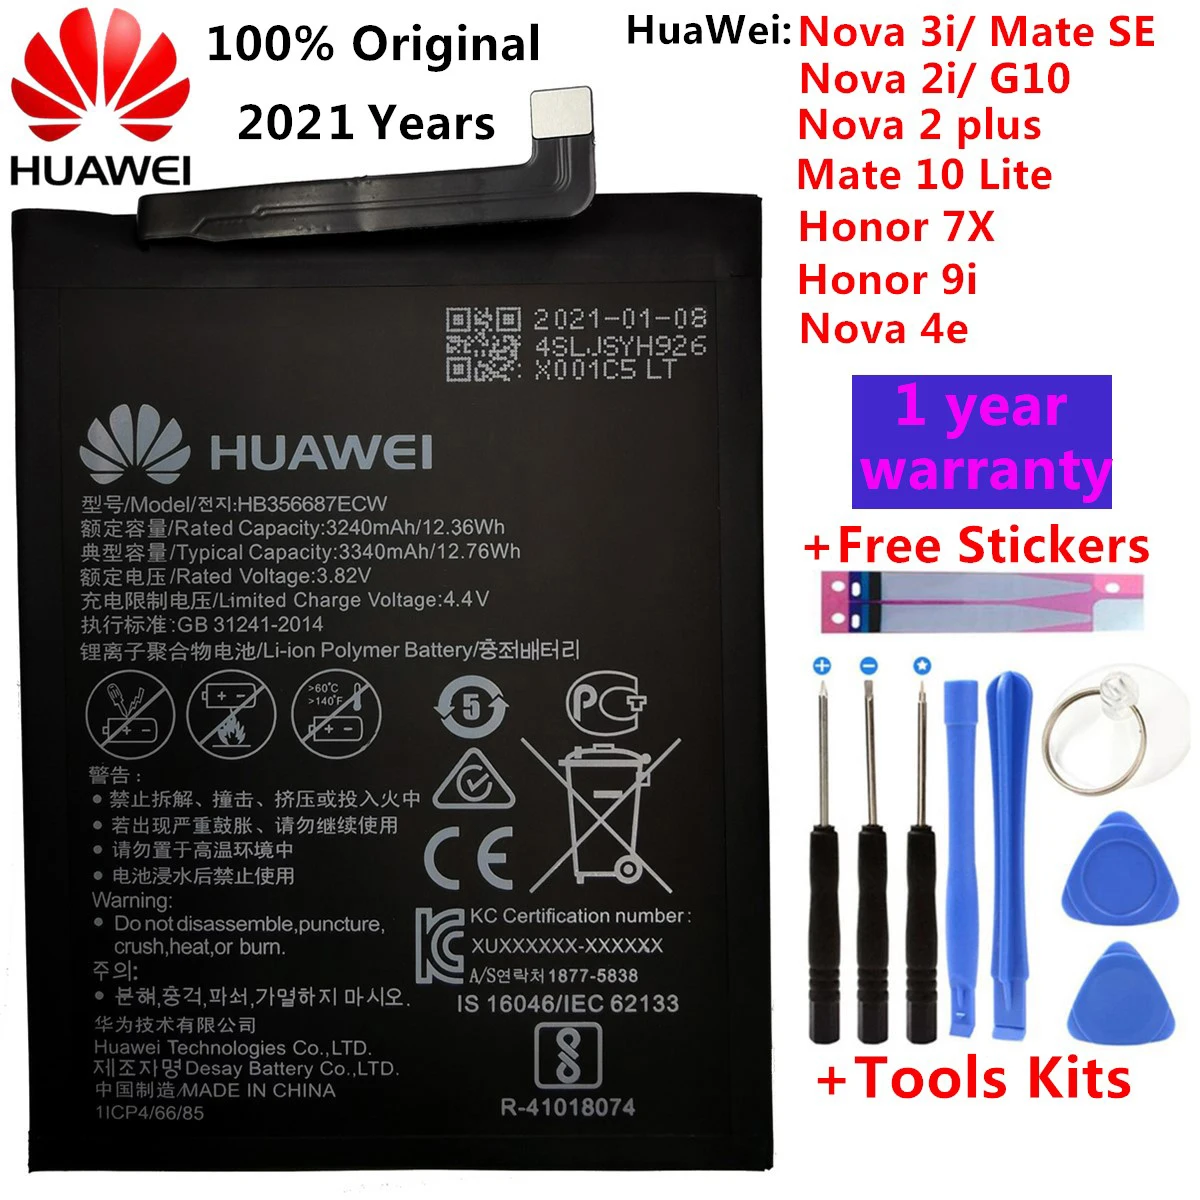 

Hua Wei Оригинал 3340 мАч HB356687ECW для Huawei Nova 2 plus/Nova 2i/ G10/Mate 10 Lite/ Honor 7x/Honor 9i аккумуляторы + Инструменты